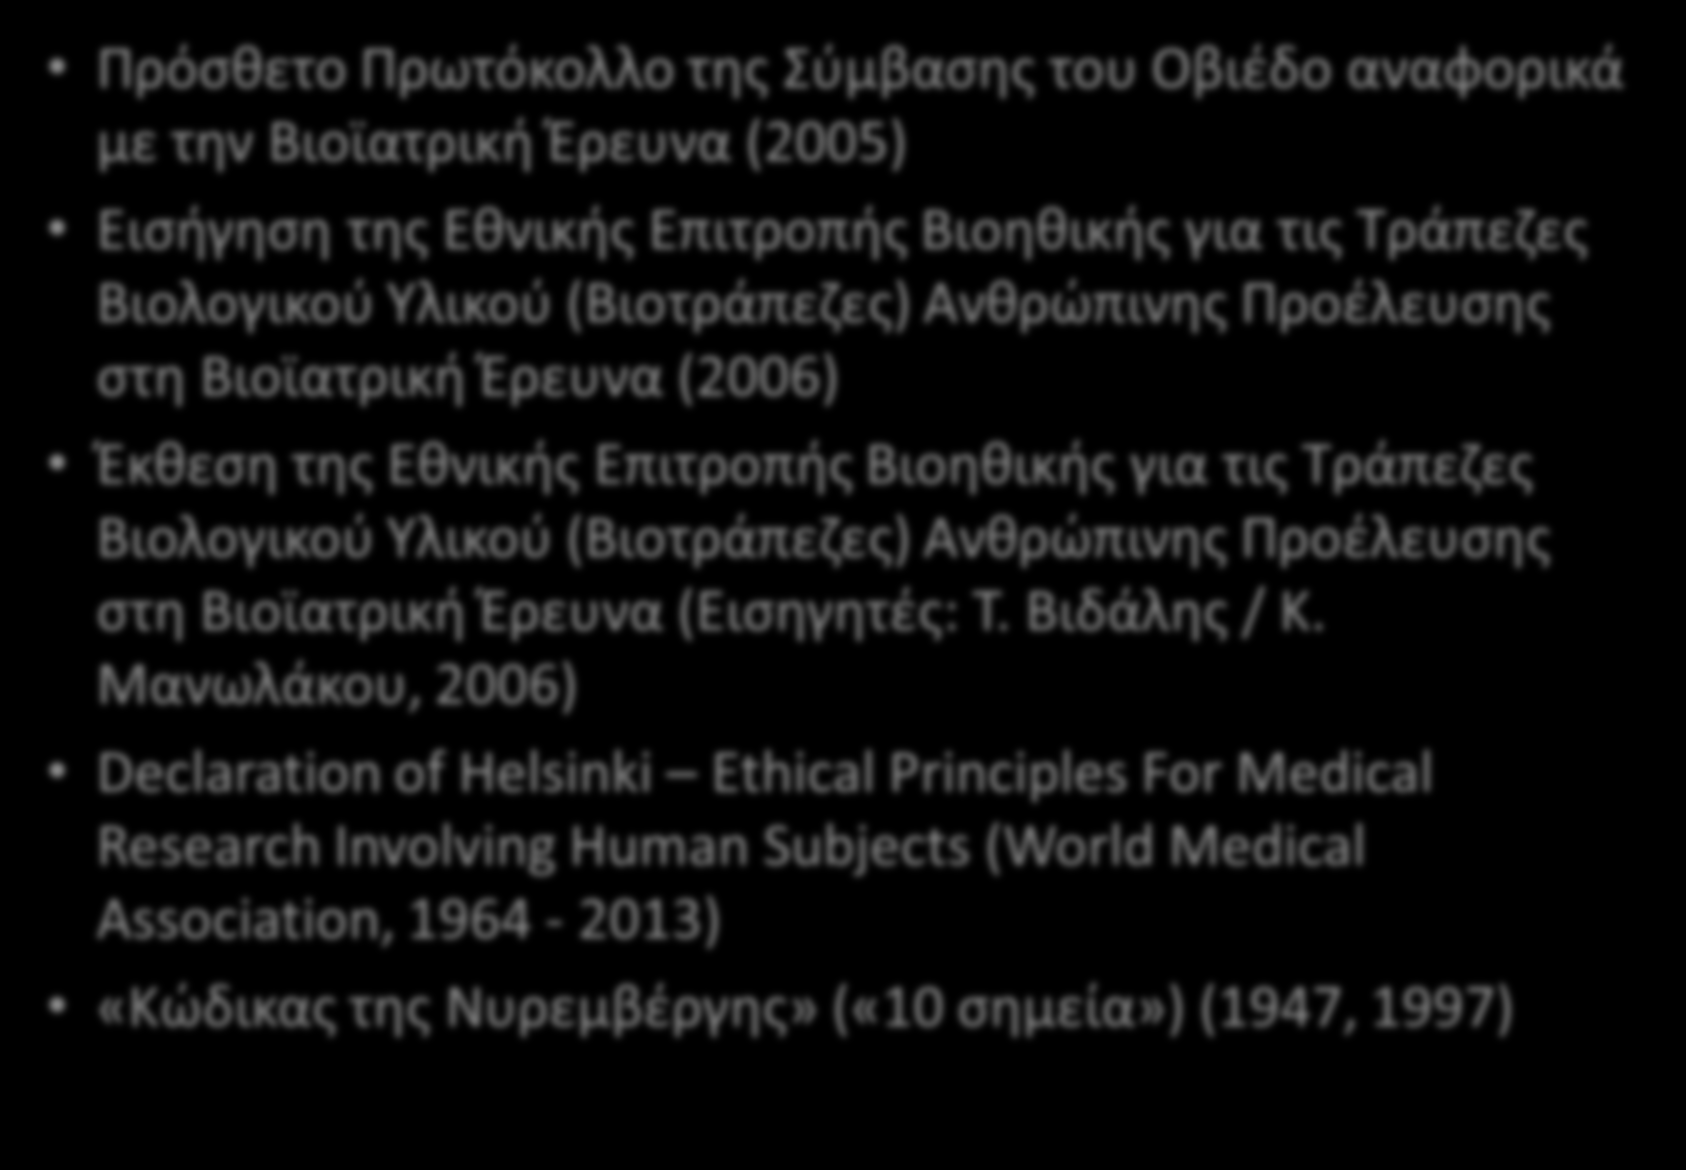 Άλλα σημαντικά νομικά κείμενα Πρόσθετο Πρωτόκολλο της Σύμβασης του Οβιέδο αναφορικά με την Βιοϊατρική Έρευνα (2005) Εισήγηση της Εθνικής Επιτροπής Βιοηθικής για τις Τράπεζες Βιολογικού Υλικού